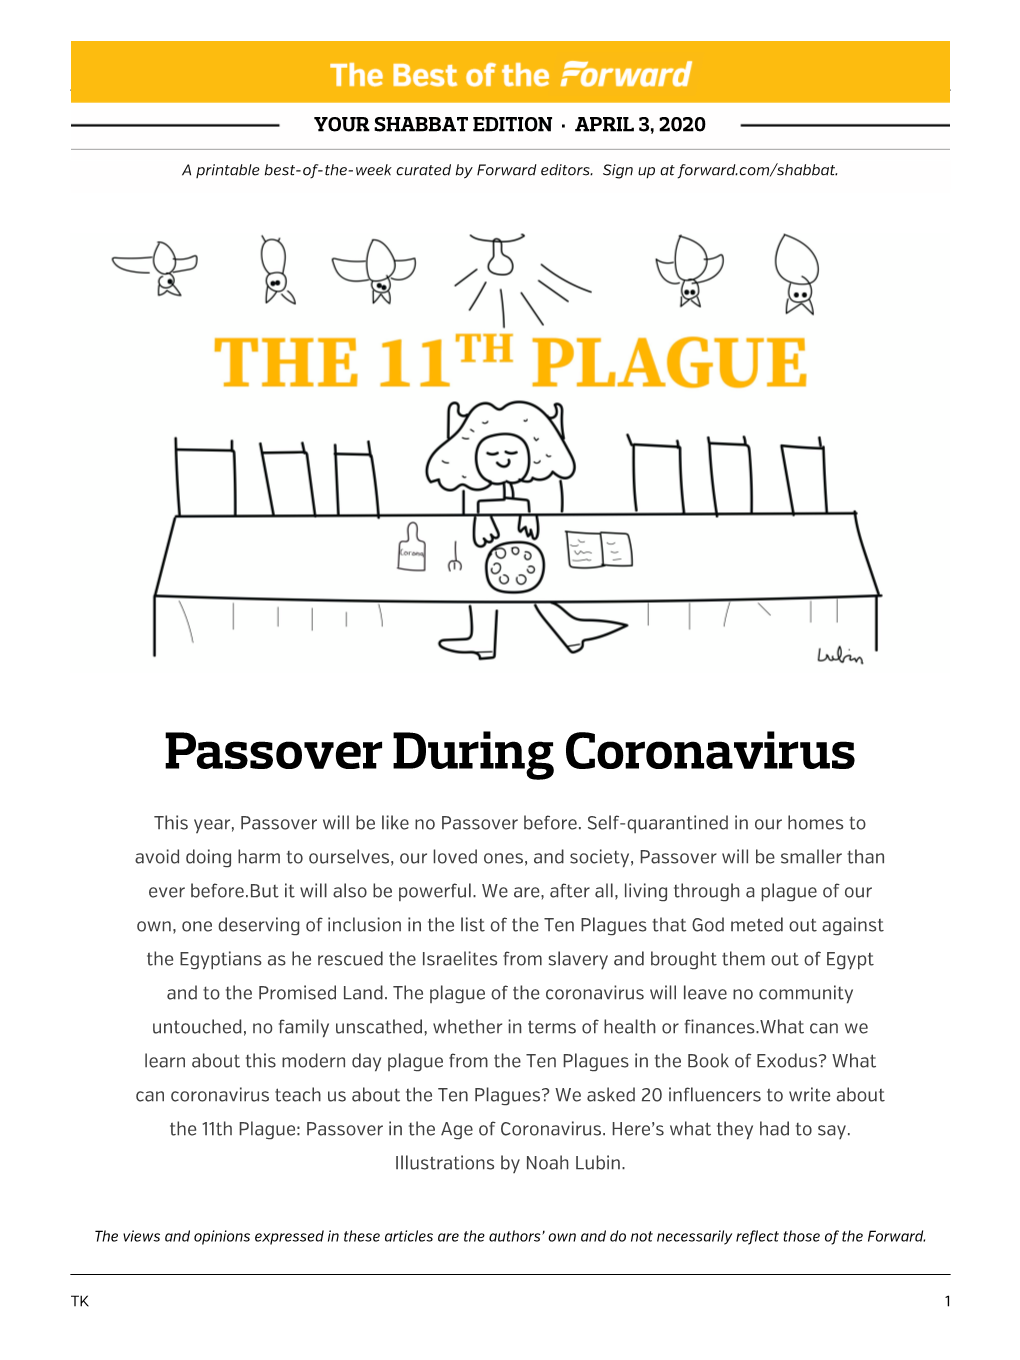 Passover During Coronavirus